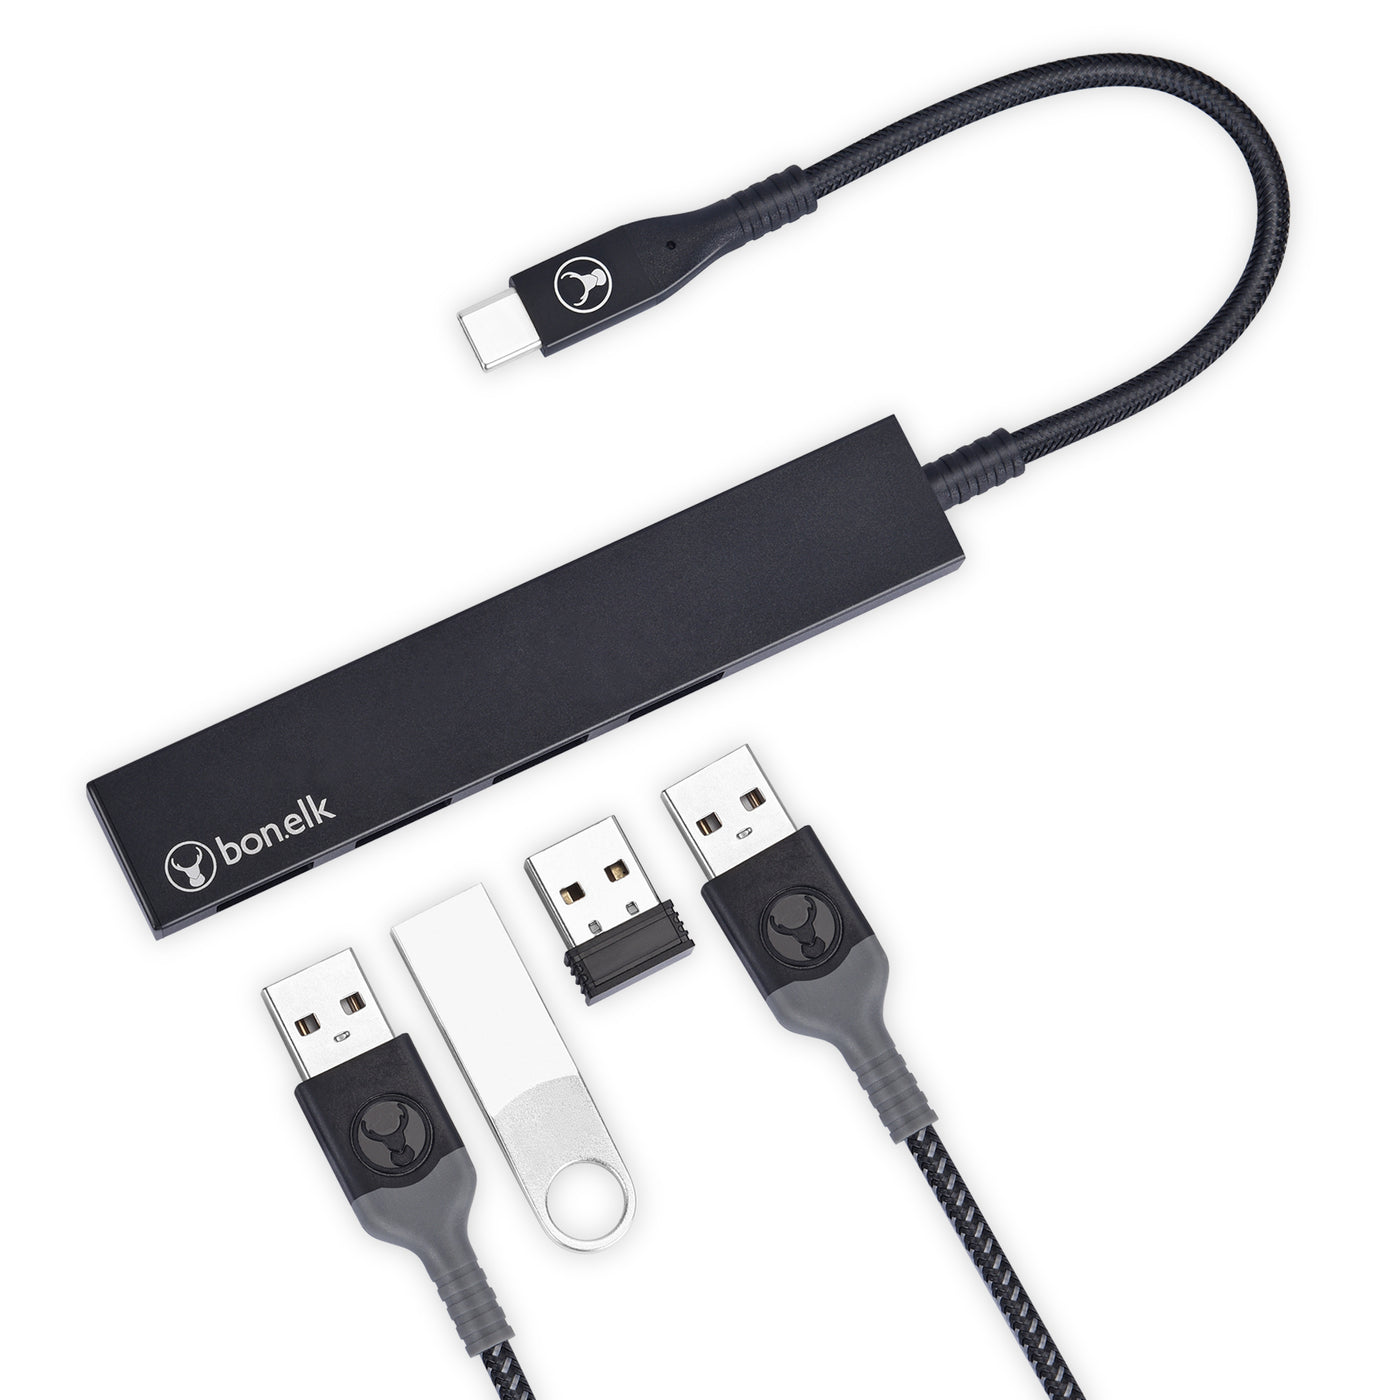 Bonelk Long-Life USB-C to 4 Port USB 3.0 Slim Hub - Black